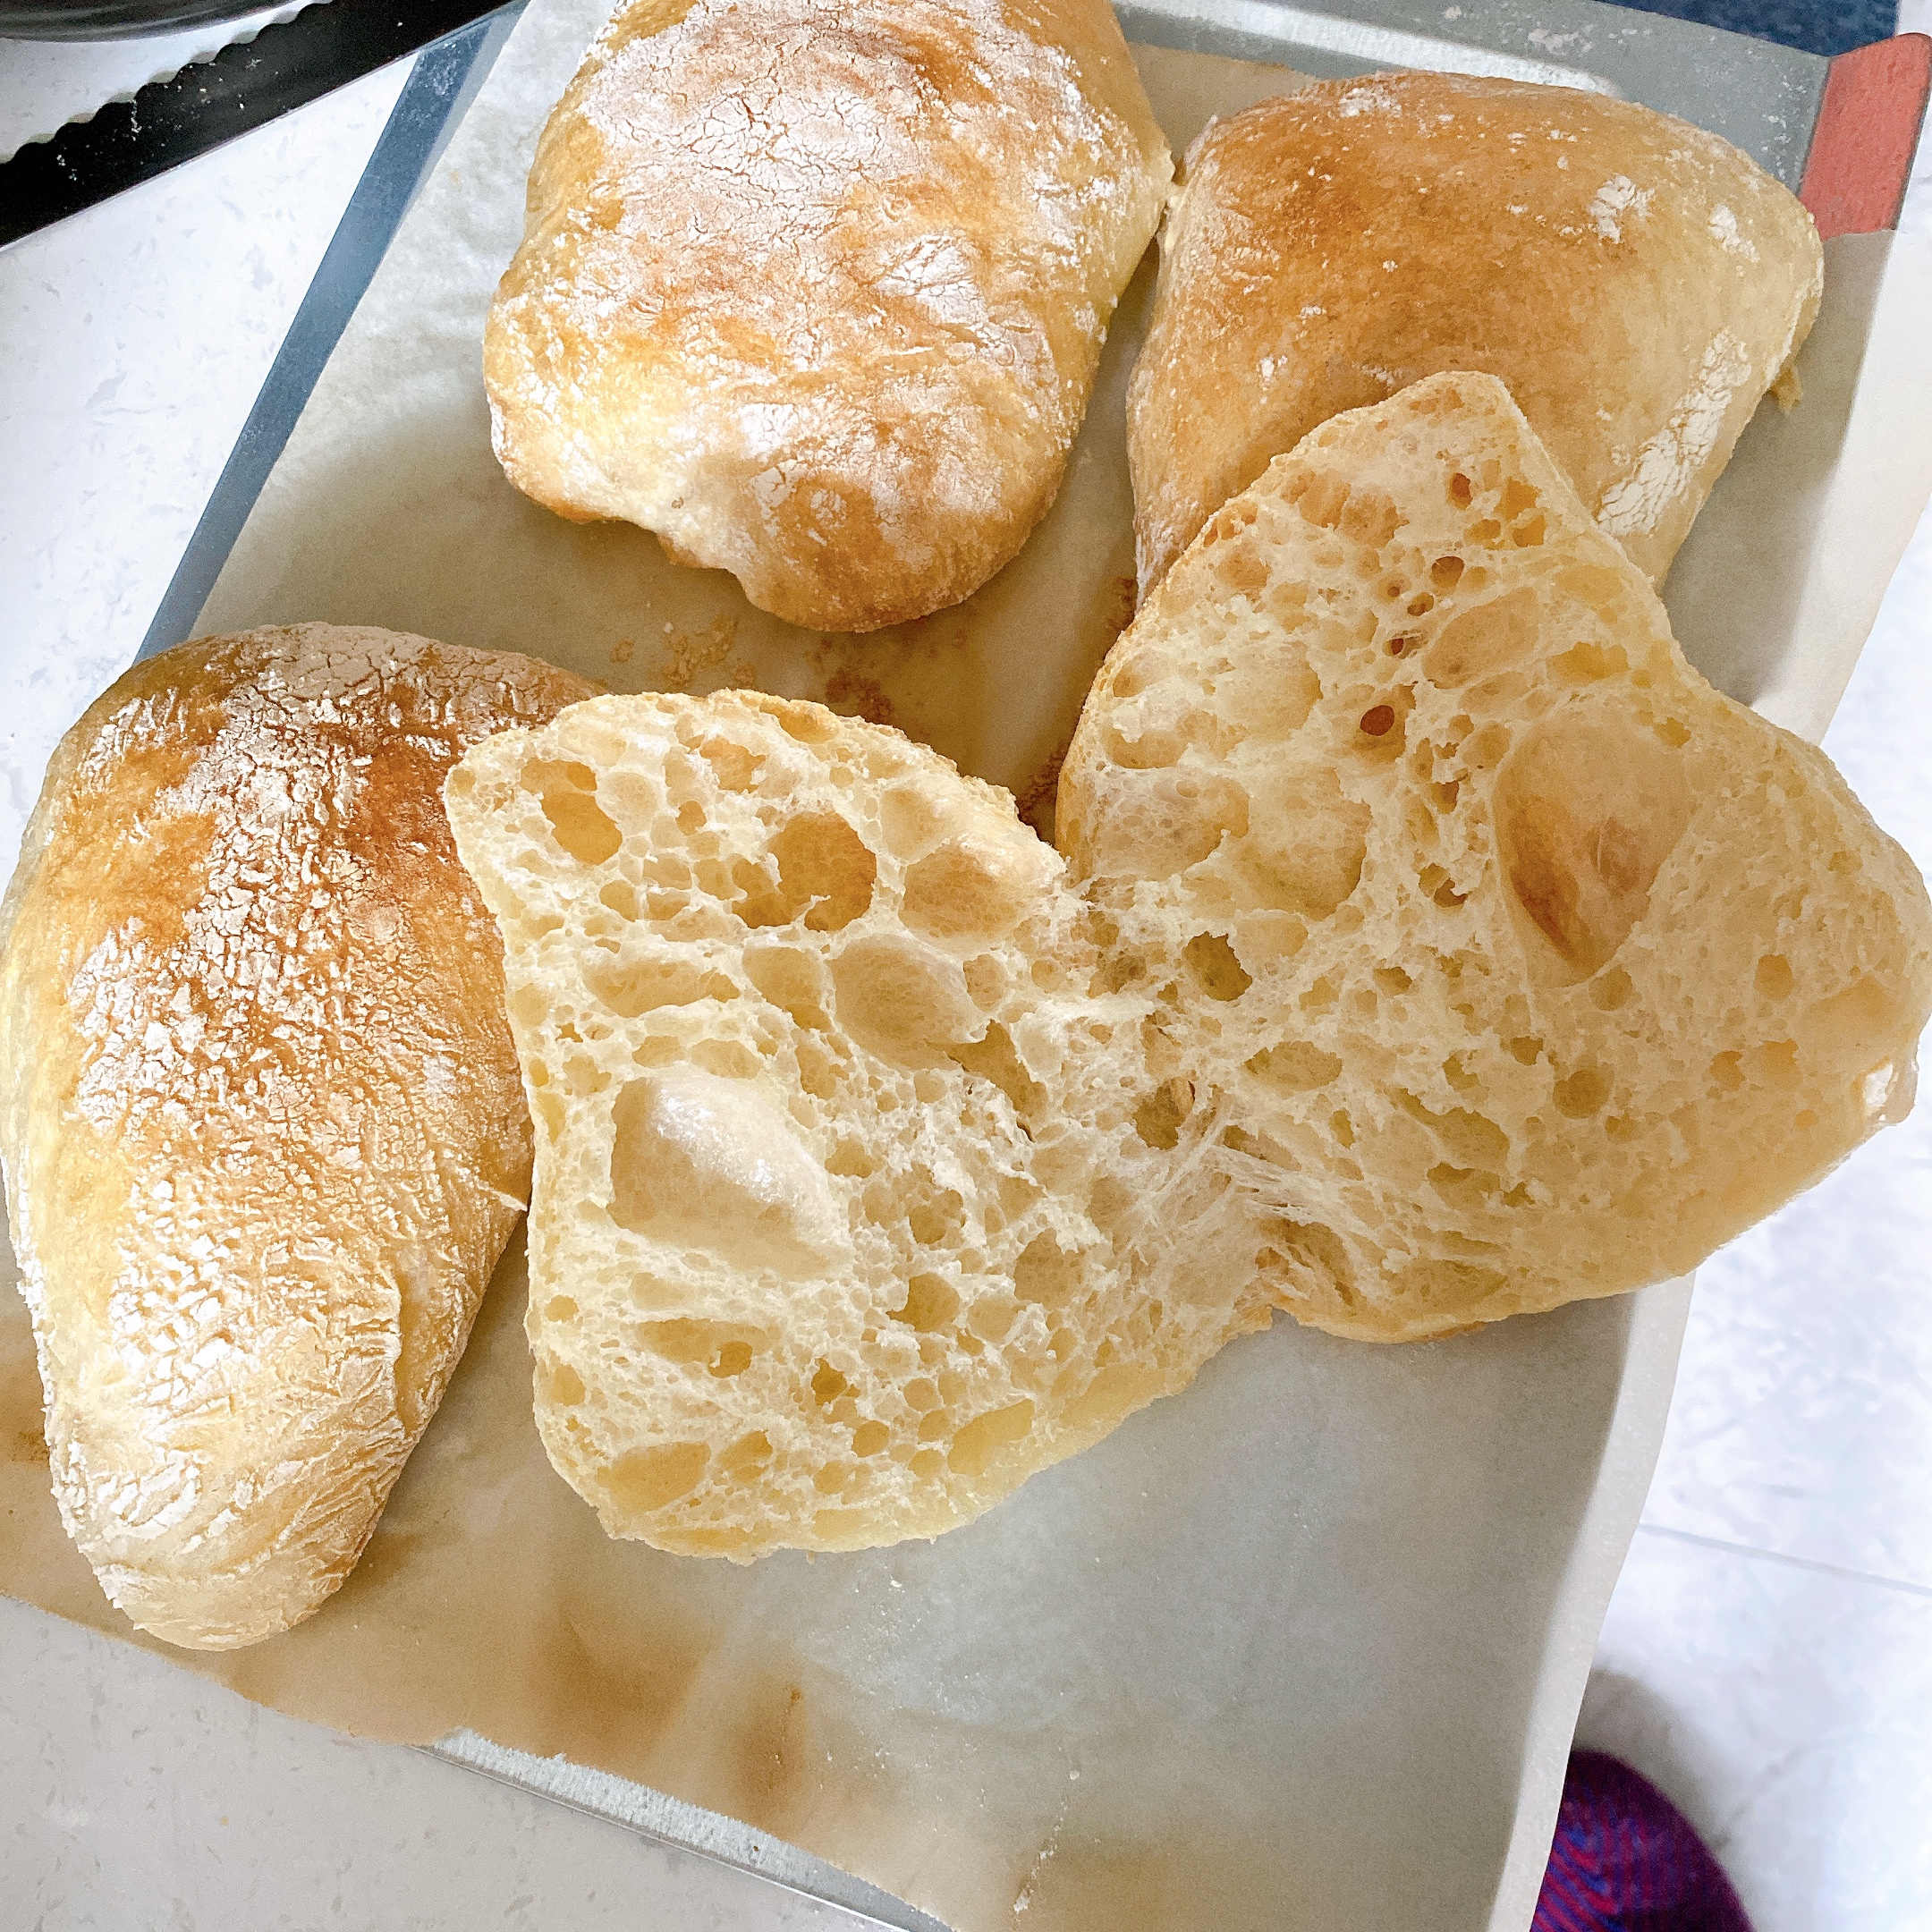 80%水量的意大利面包-夏巴塔的做法